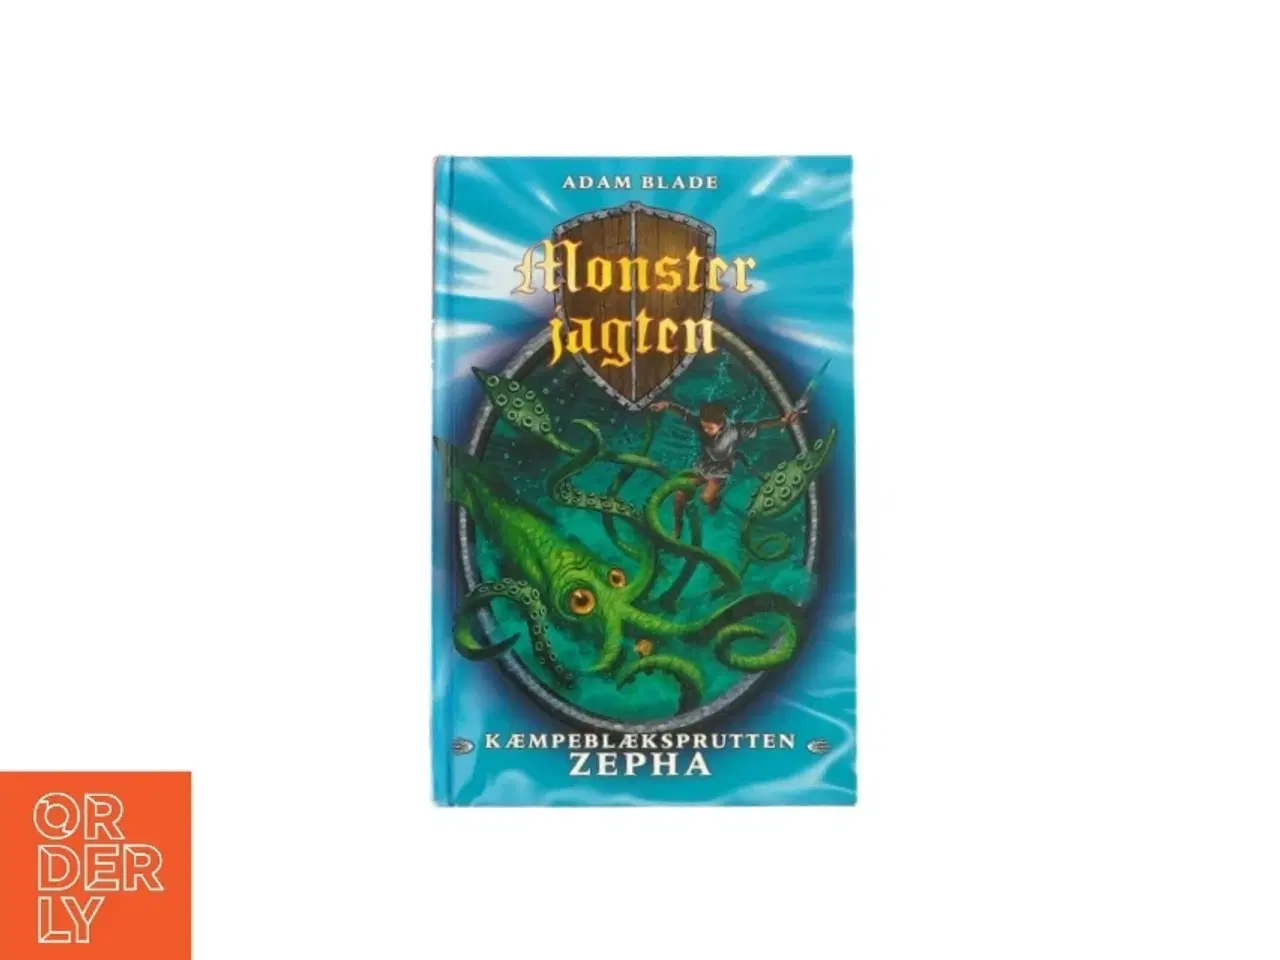 Billede 1 - Monsterjagten - kæmpeblæksprutten Zepha af Adam Blade (bog)